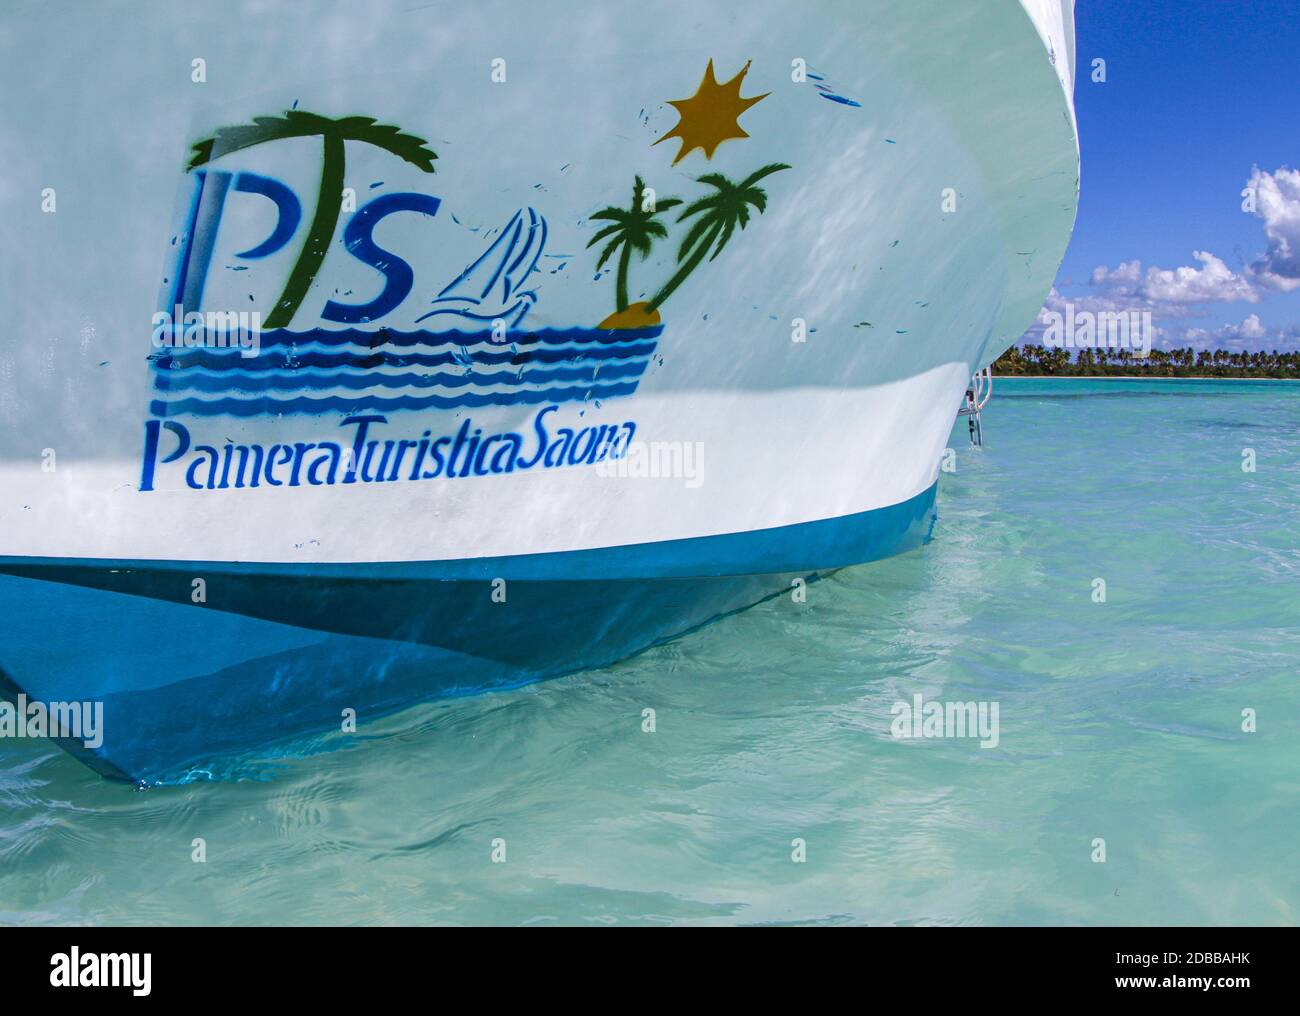 Punta Cana, DO - 29 février 2016 : une fermeture d'un bateau touristique en usage par Palmera Turistica Saona, société touristique en République dominicaine. Banque D'Images